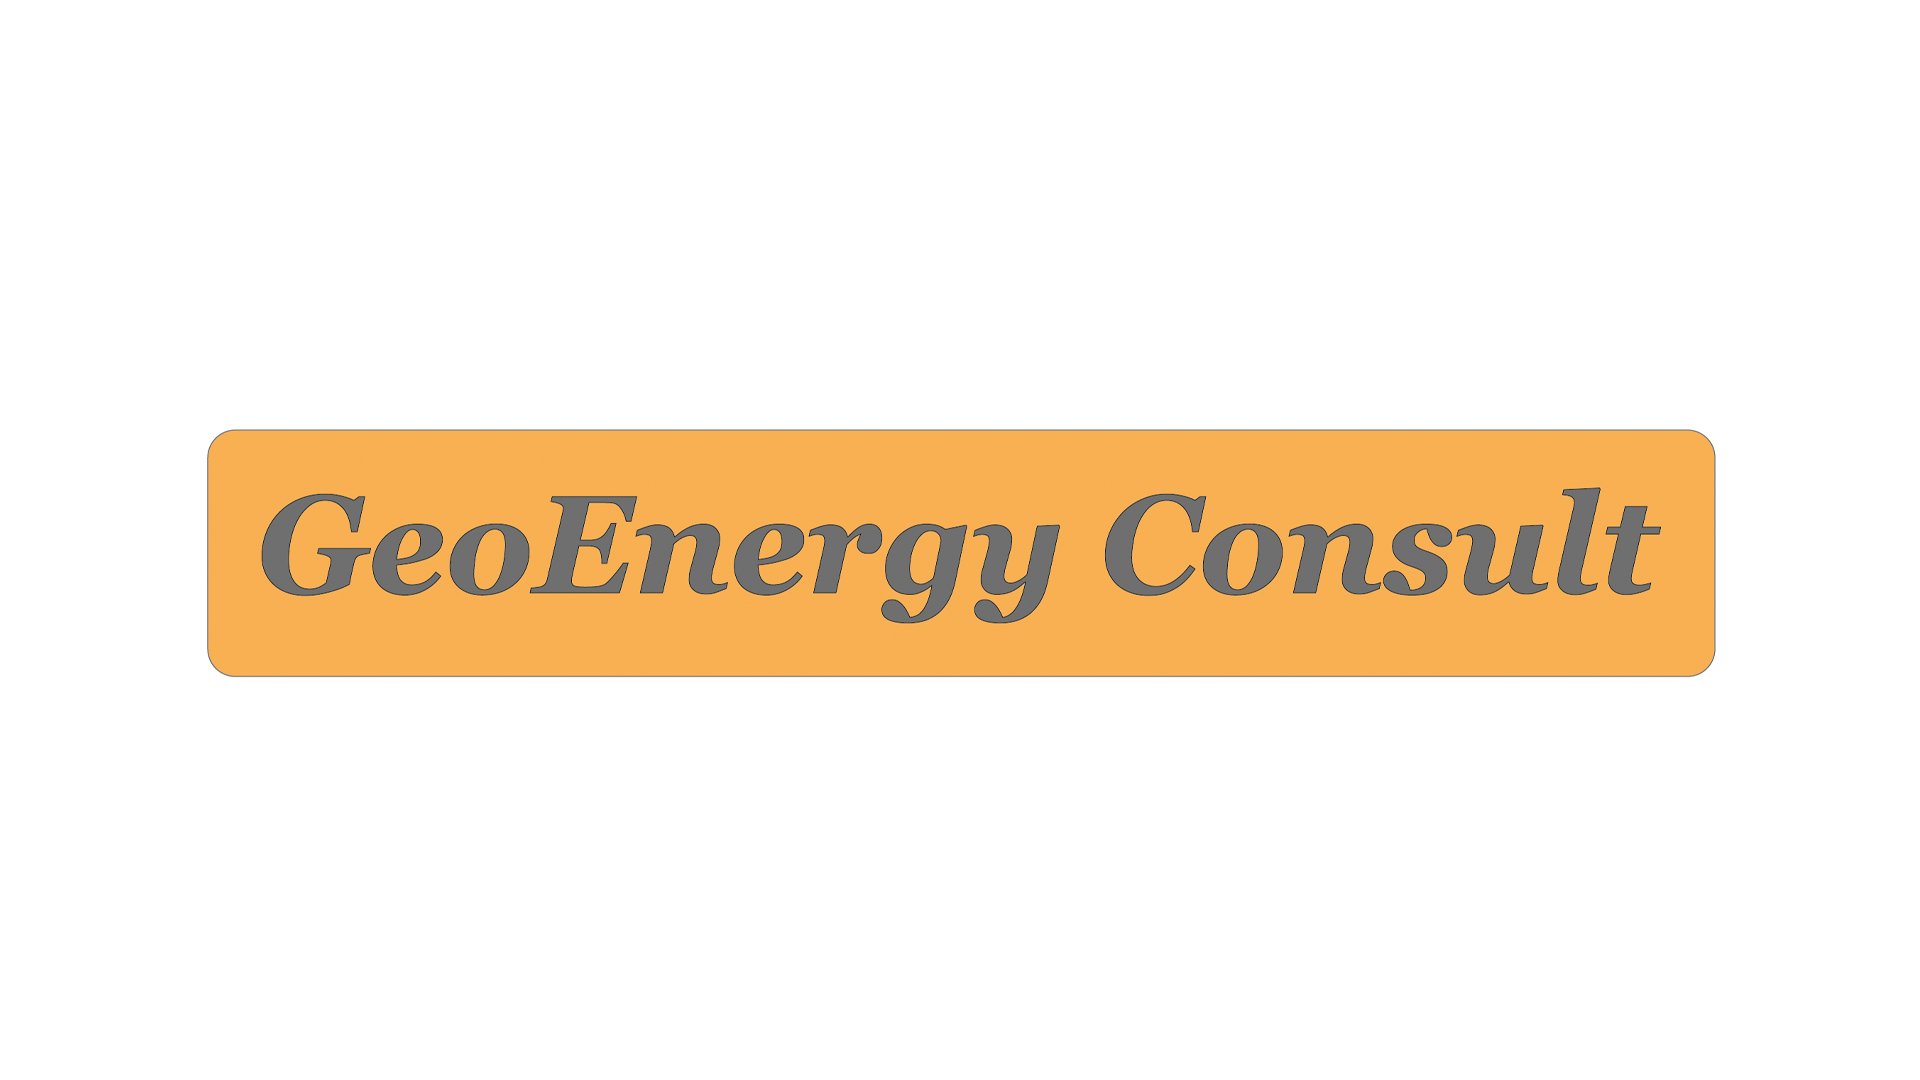 GeoEnergy Consult